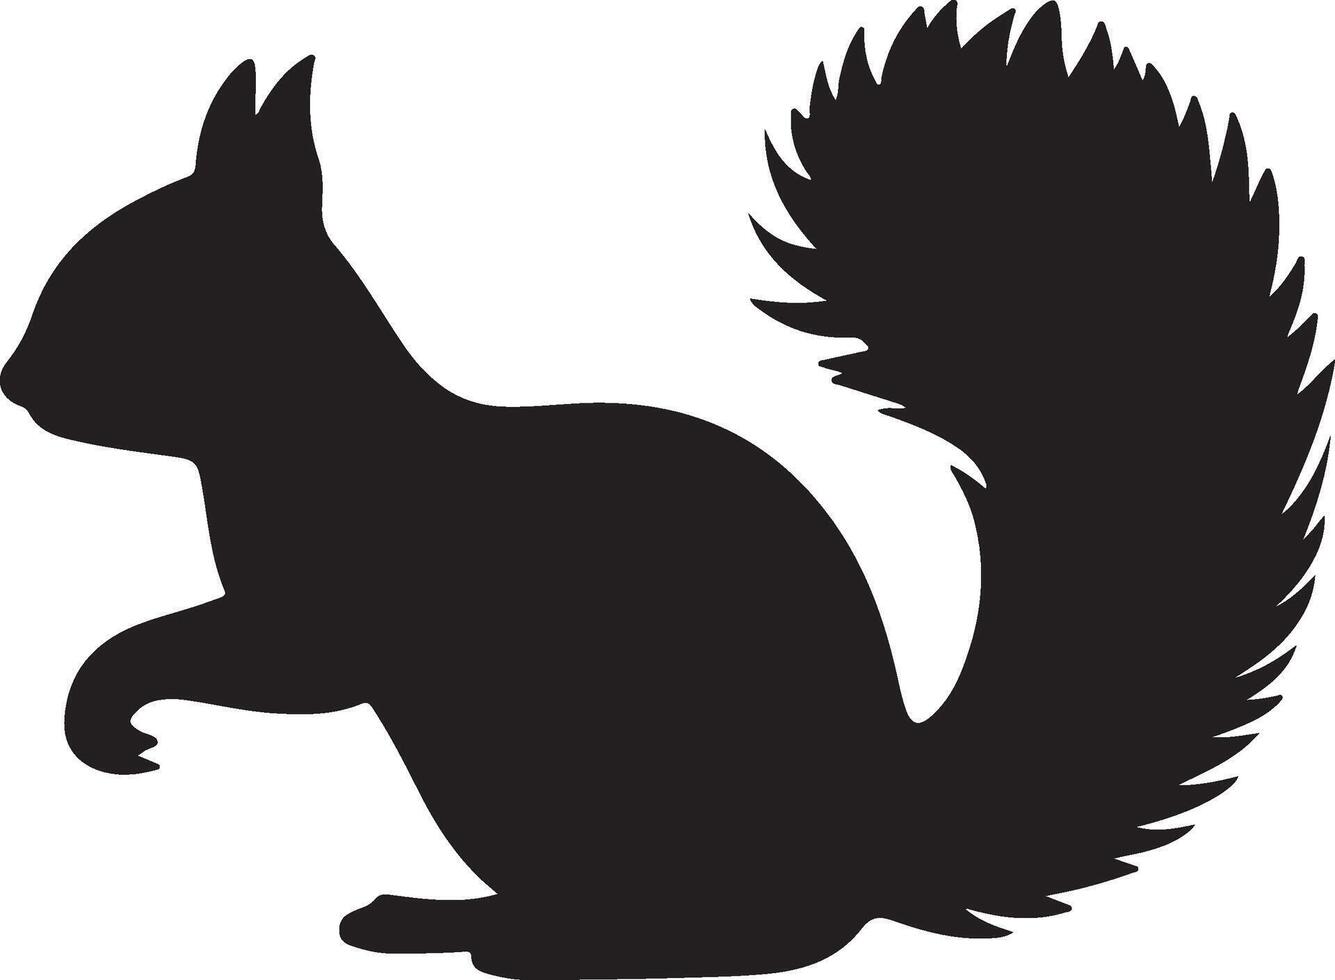 Eichhörnchen Silhouette Vektor Illustration Weiß Hintergrund